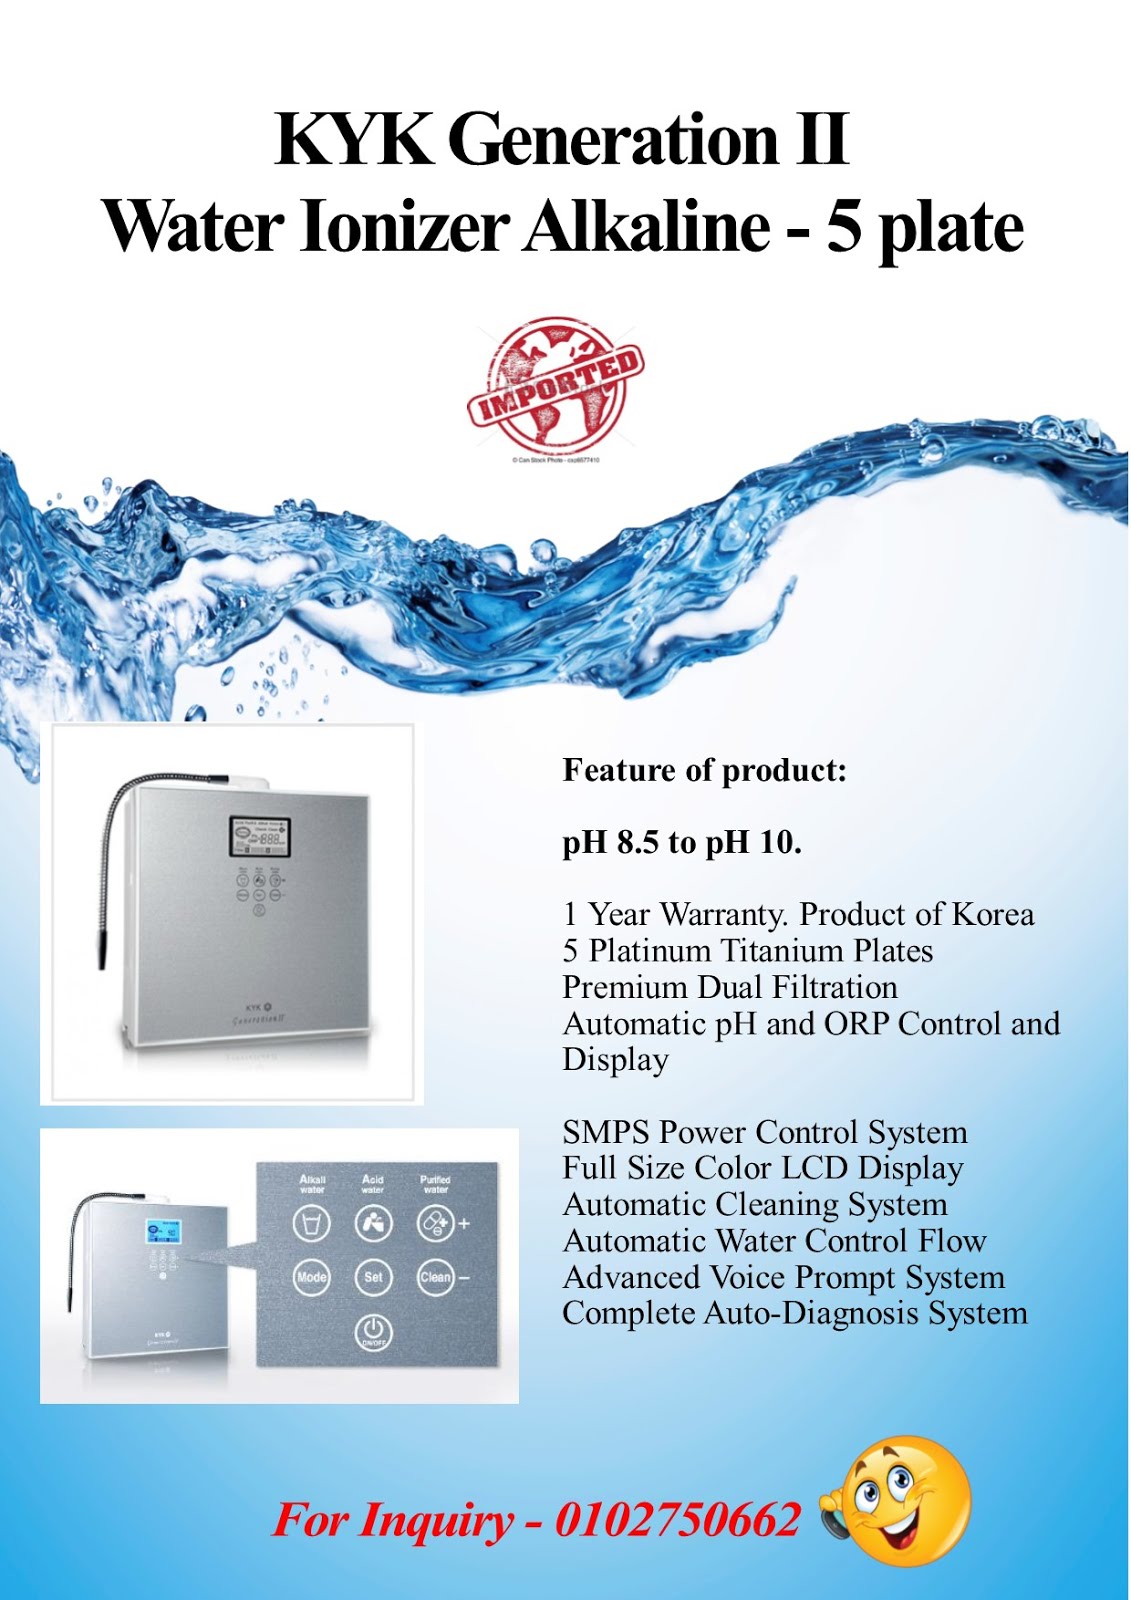 Water Ionizer Alkaline